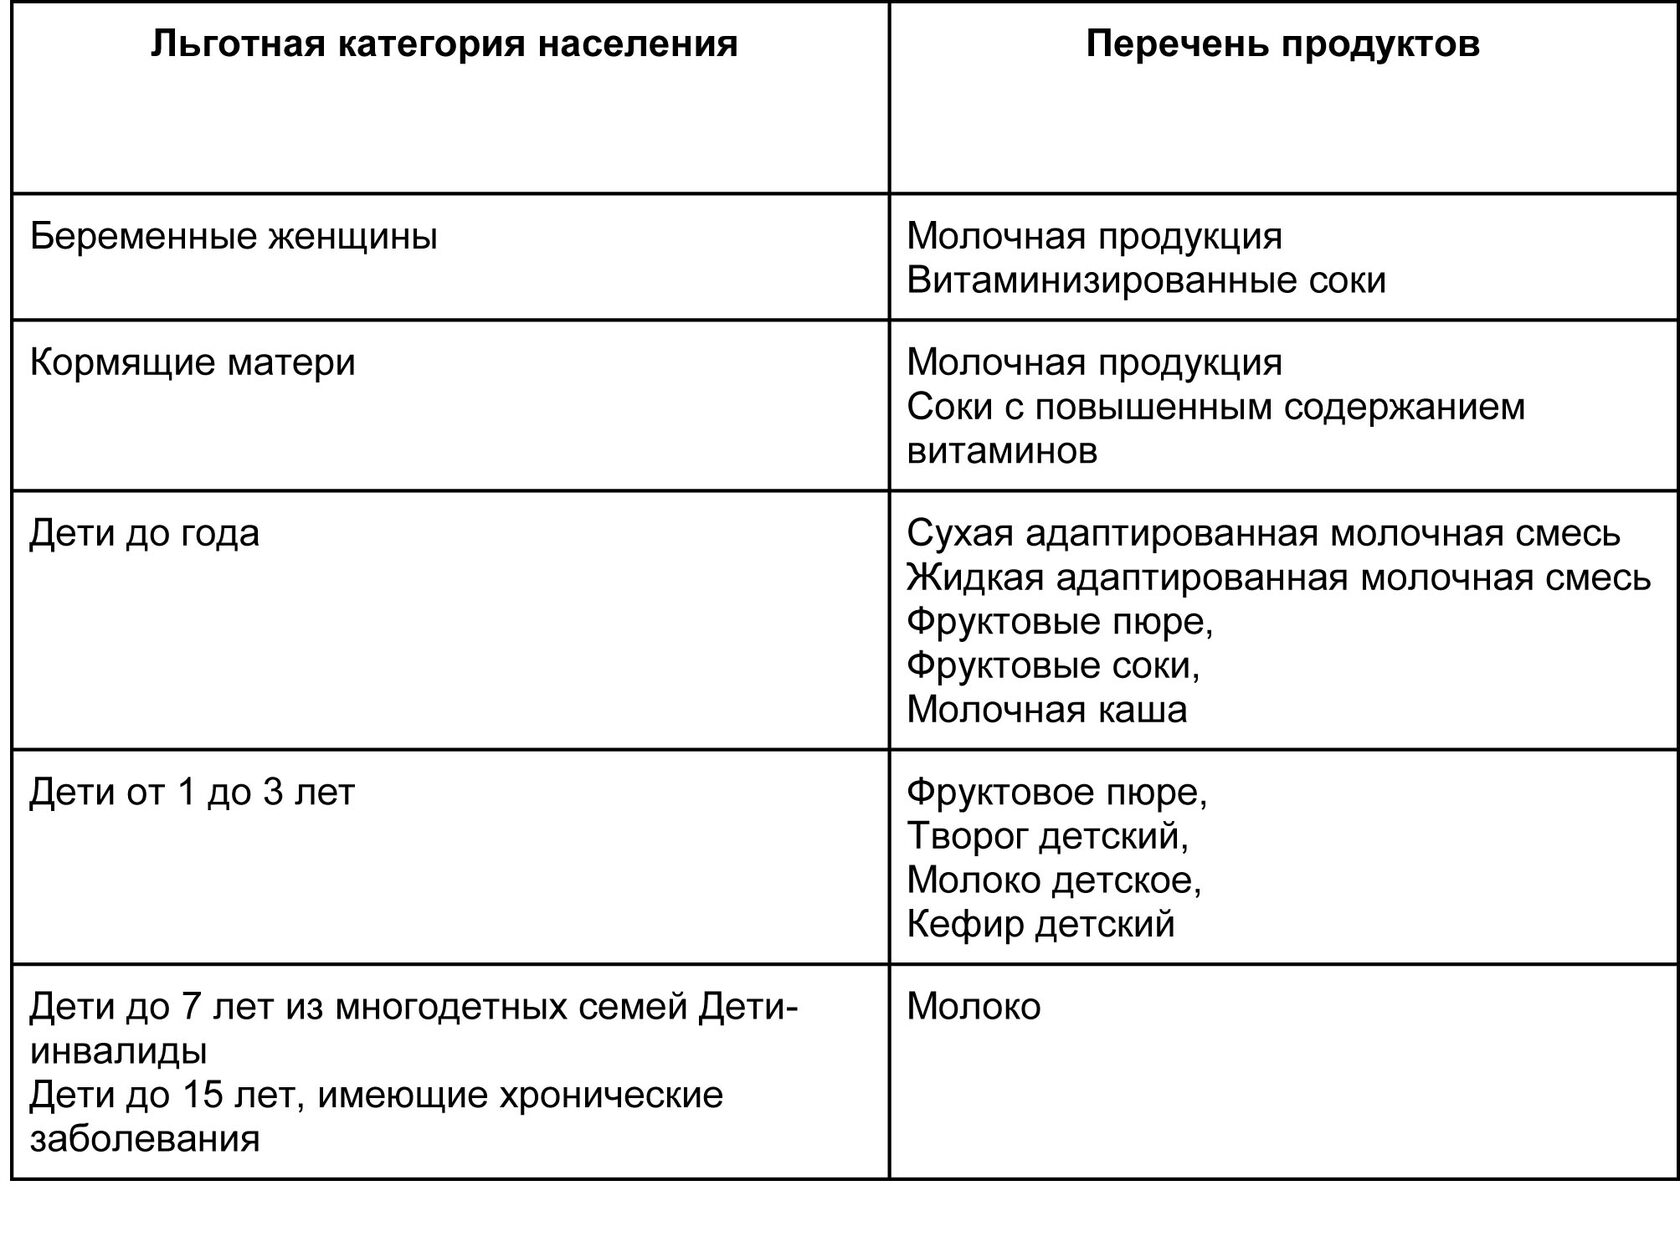 Набор и количество бесплатных продуктов для детей и женщин в Екатеринбурге